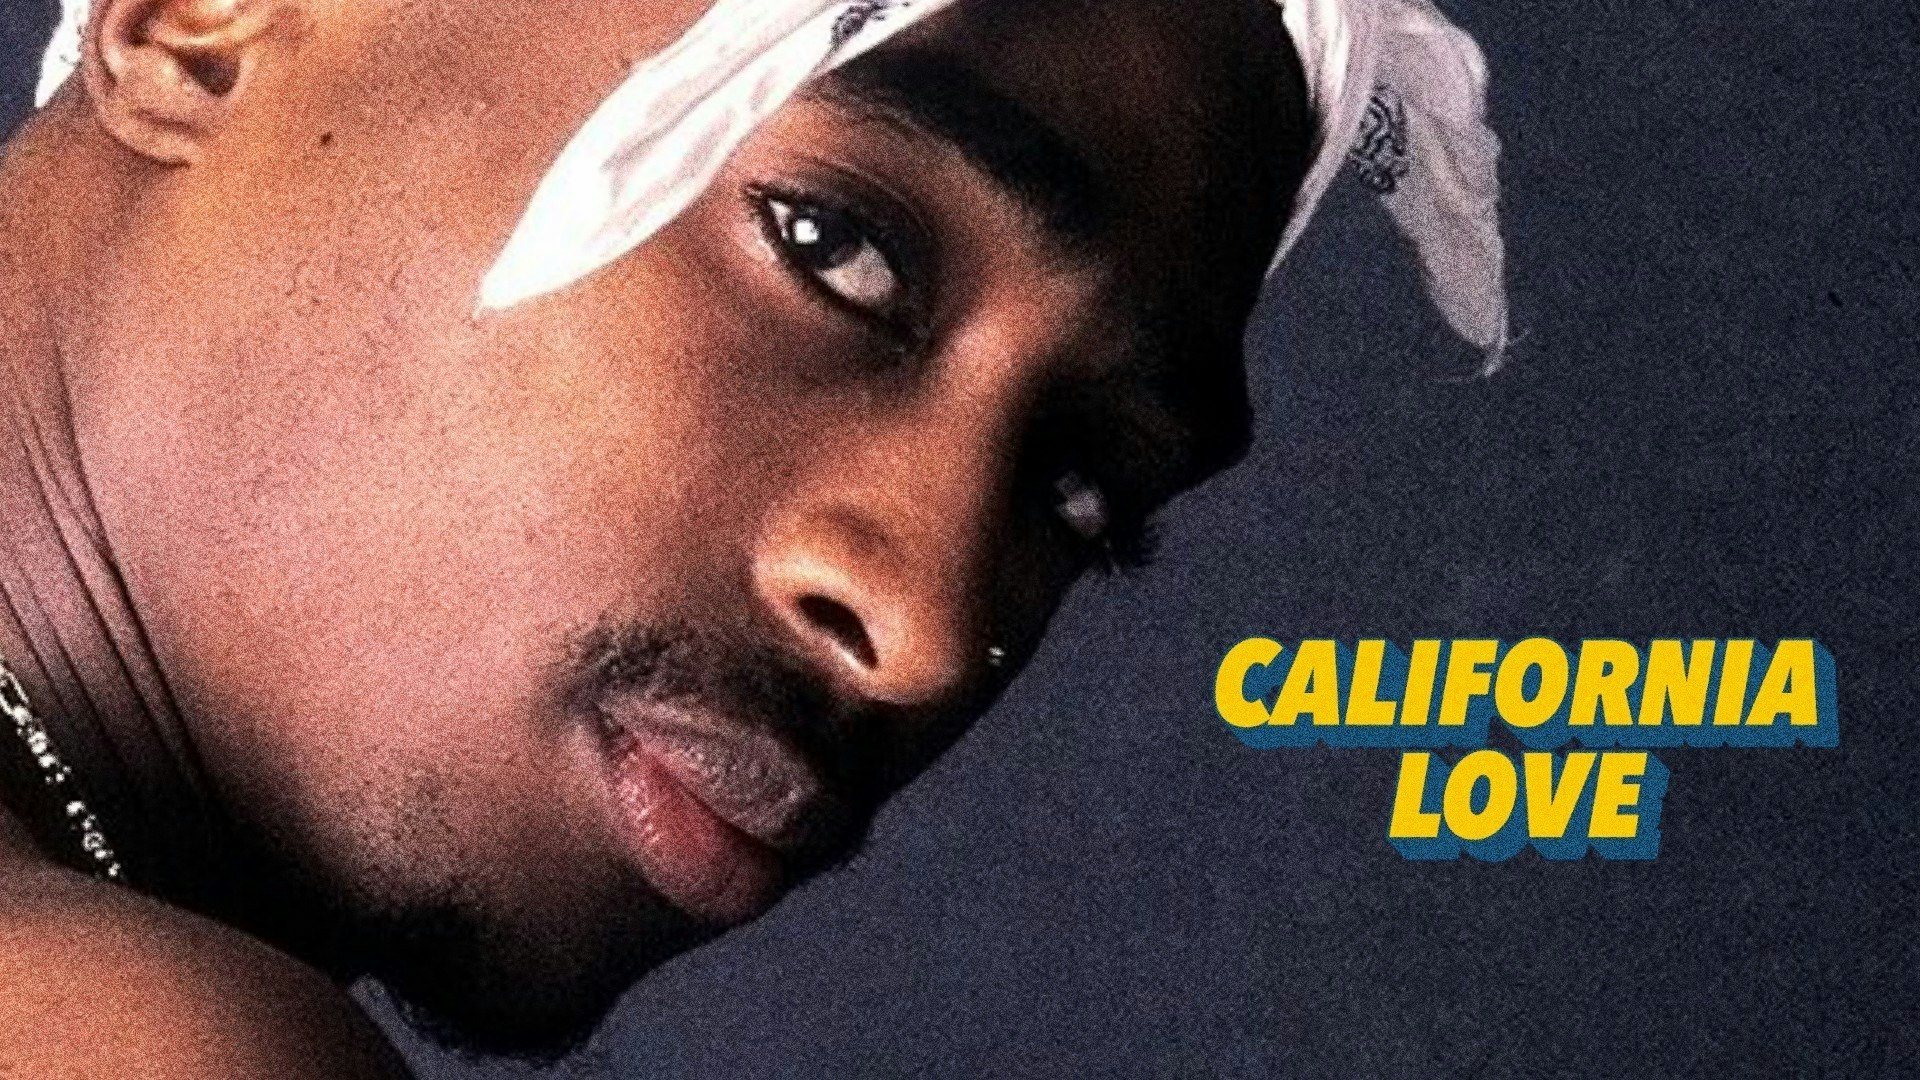 California Love (90s/00s Hip Hop & R&B)